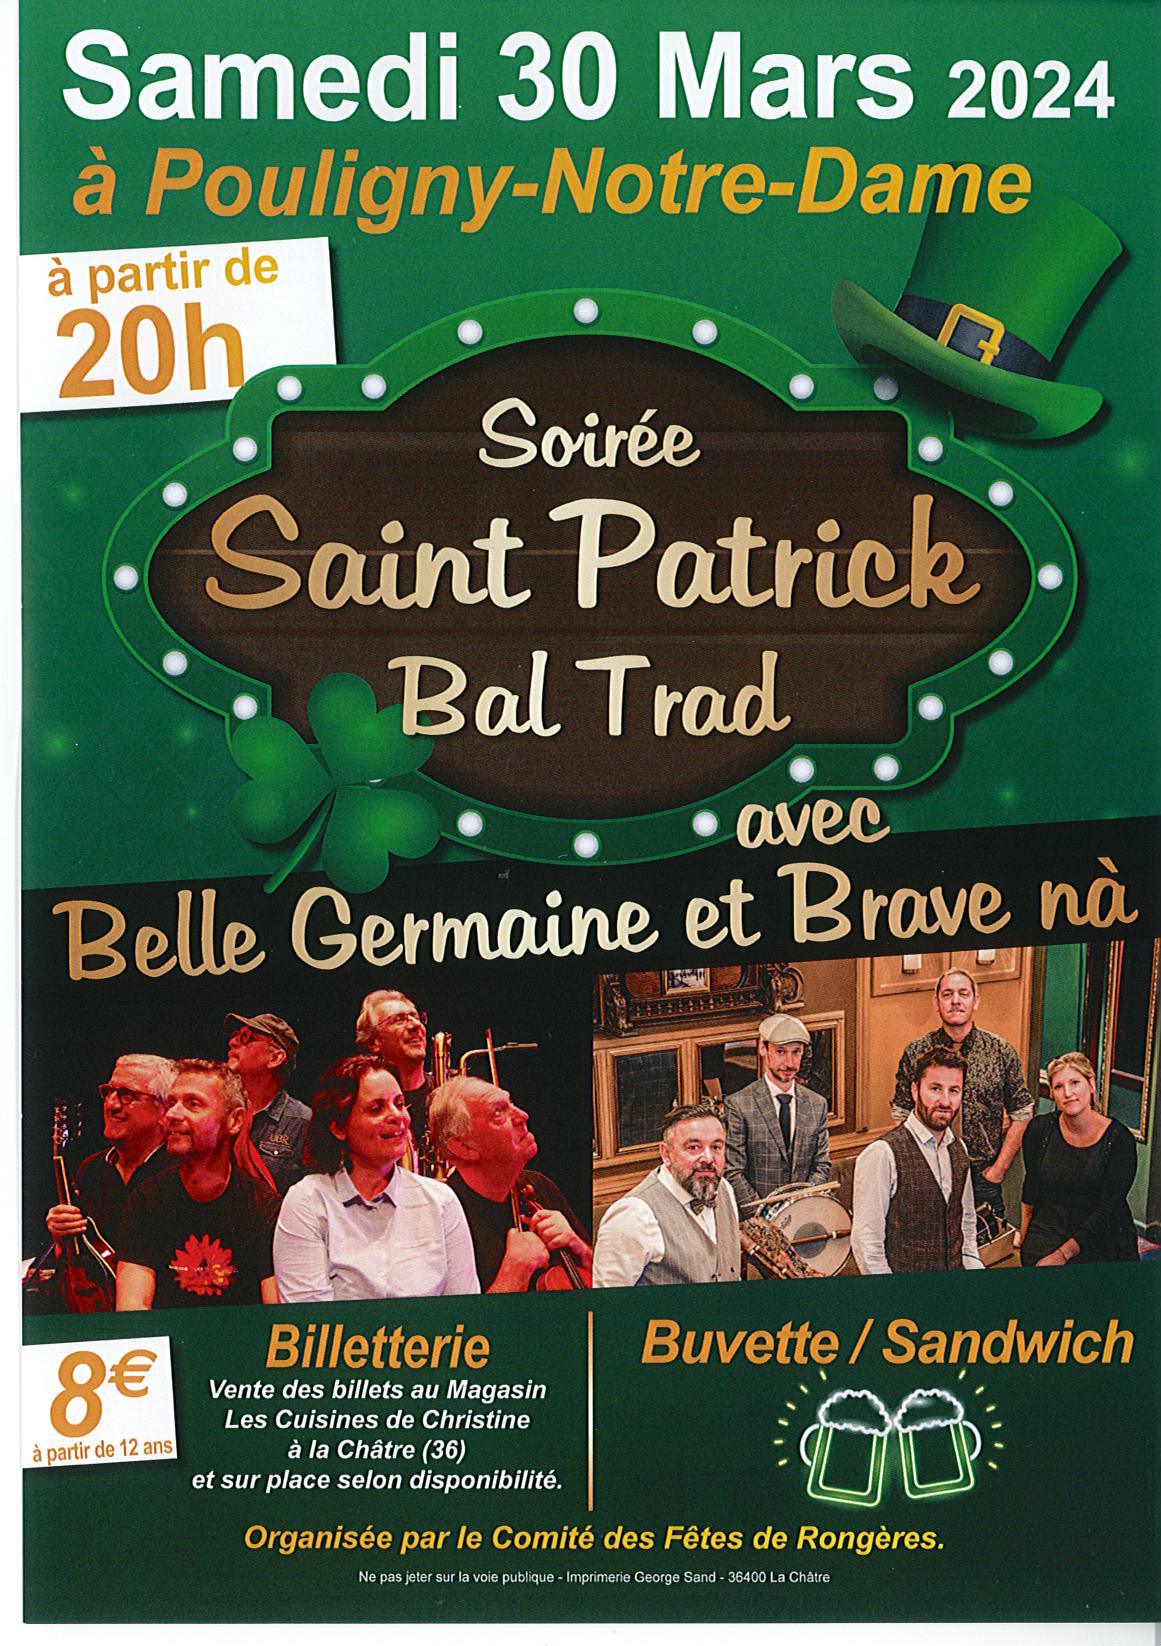 Soirée Saint-Patrick – Bal trad avec Belle Germaine et Brave nà